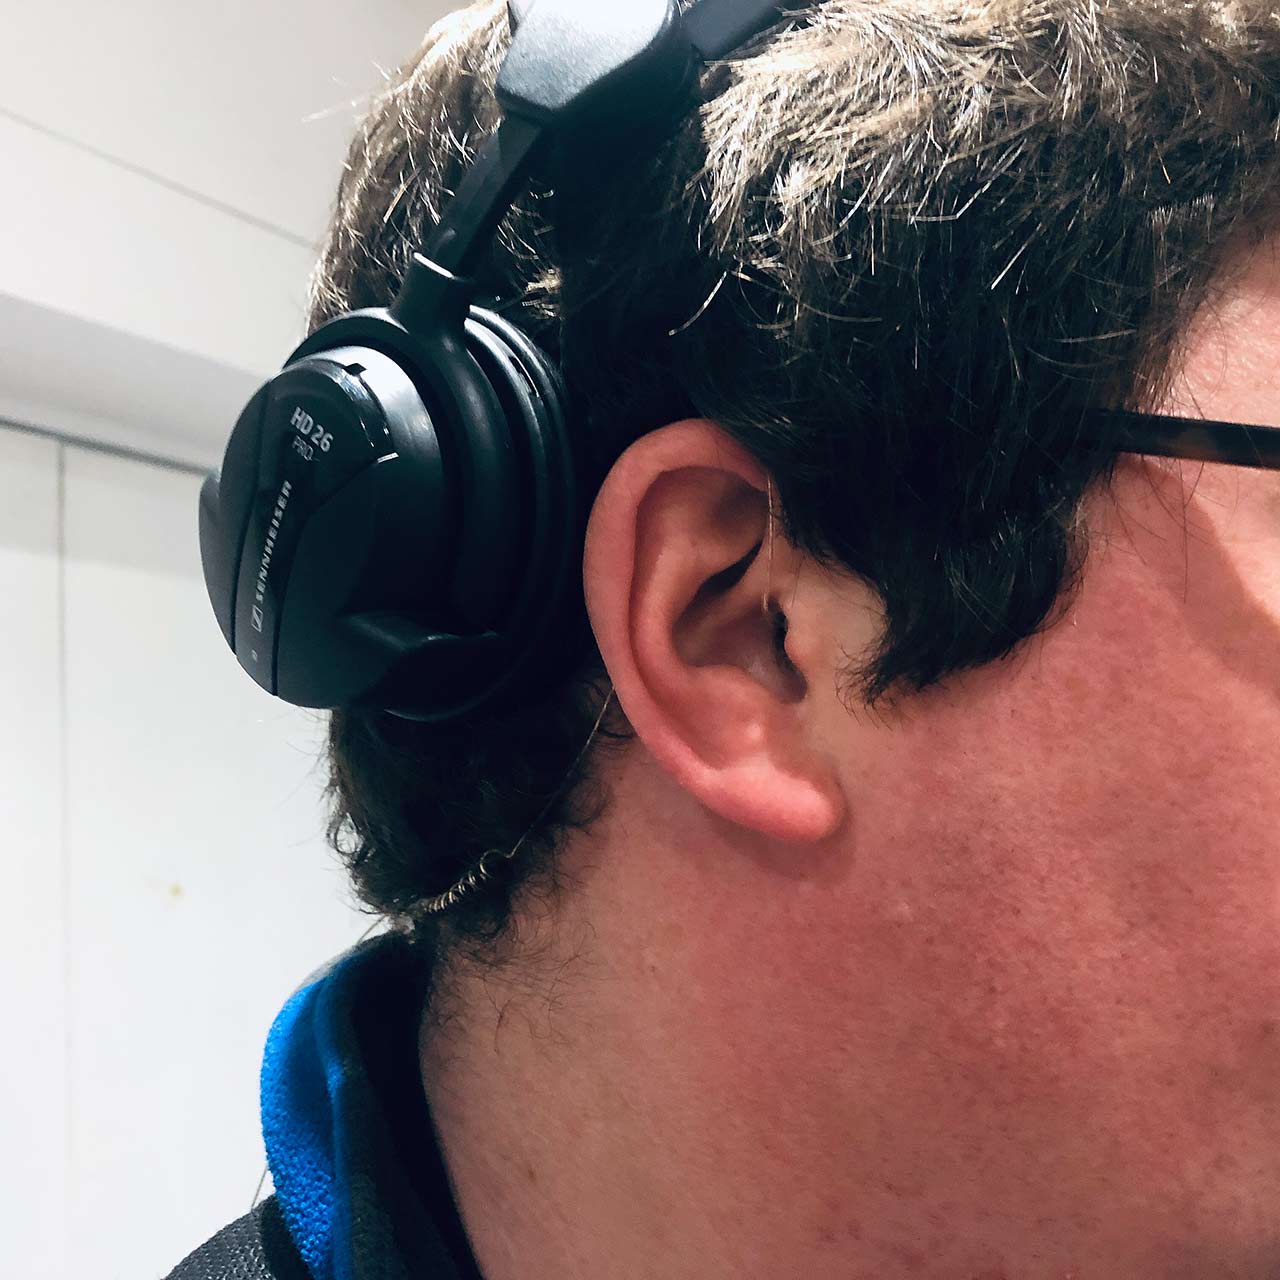 The Sidekick IFB fits in ear canal speaker